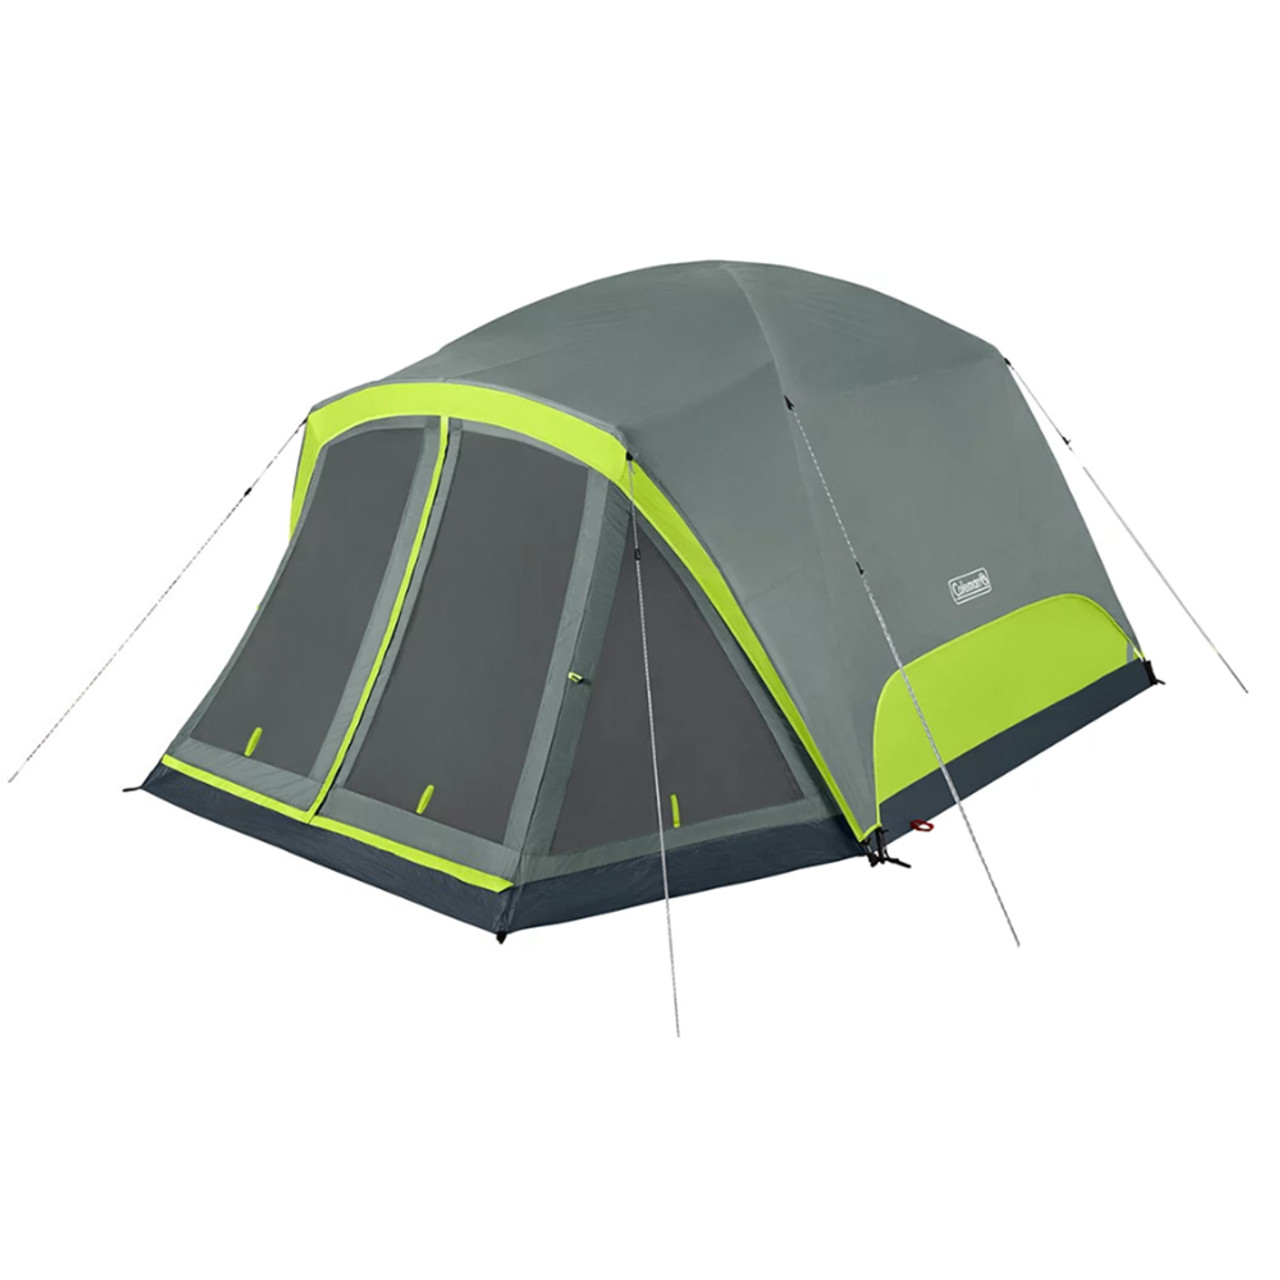 Trekker waardigheid niveau Coleman Skydome 6-Person Camping Tent w/Screen Room - Rock Grey